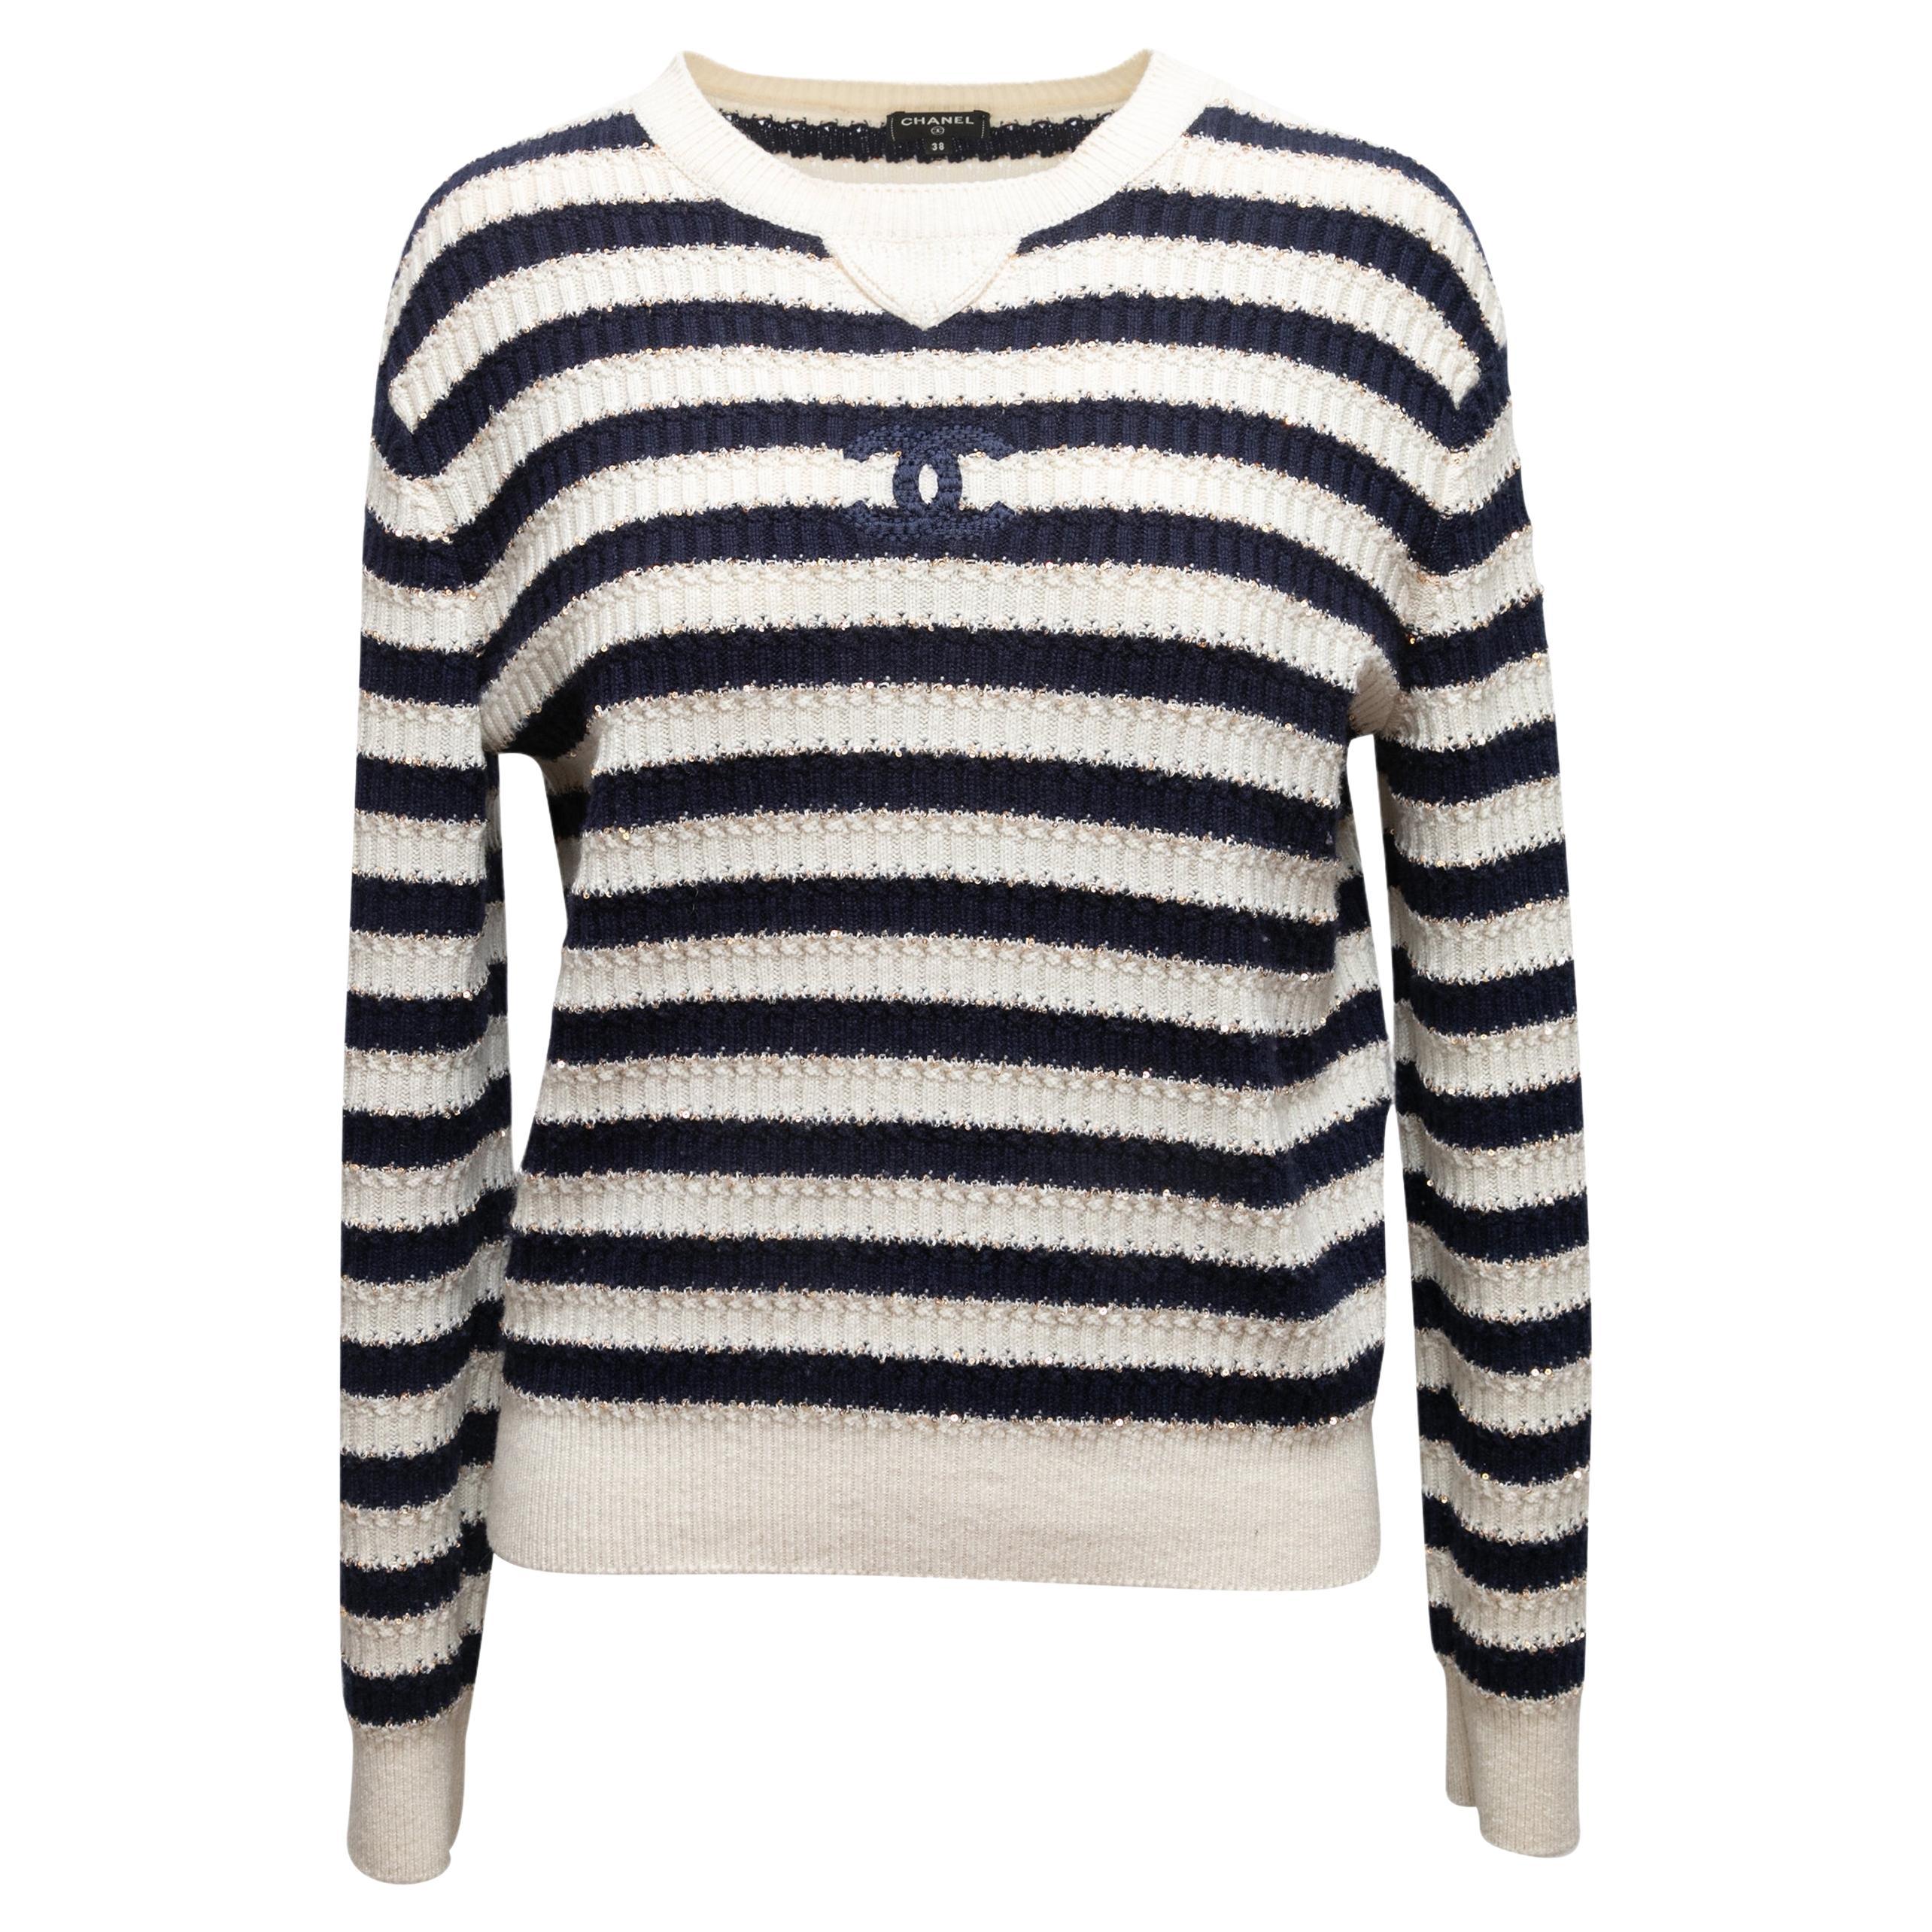 Chanel Sweaters 2021 - 6 For Sale on 1stDibs  viariz la muria 2021 precio,  chanel.sweater, chanel sweater 2021